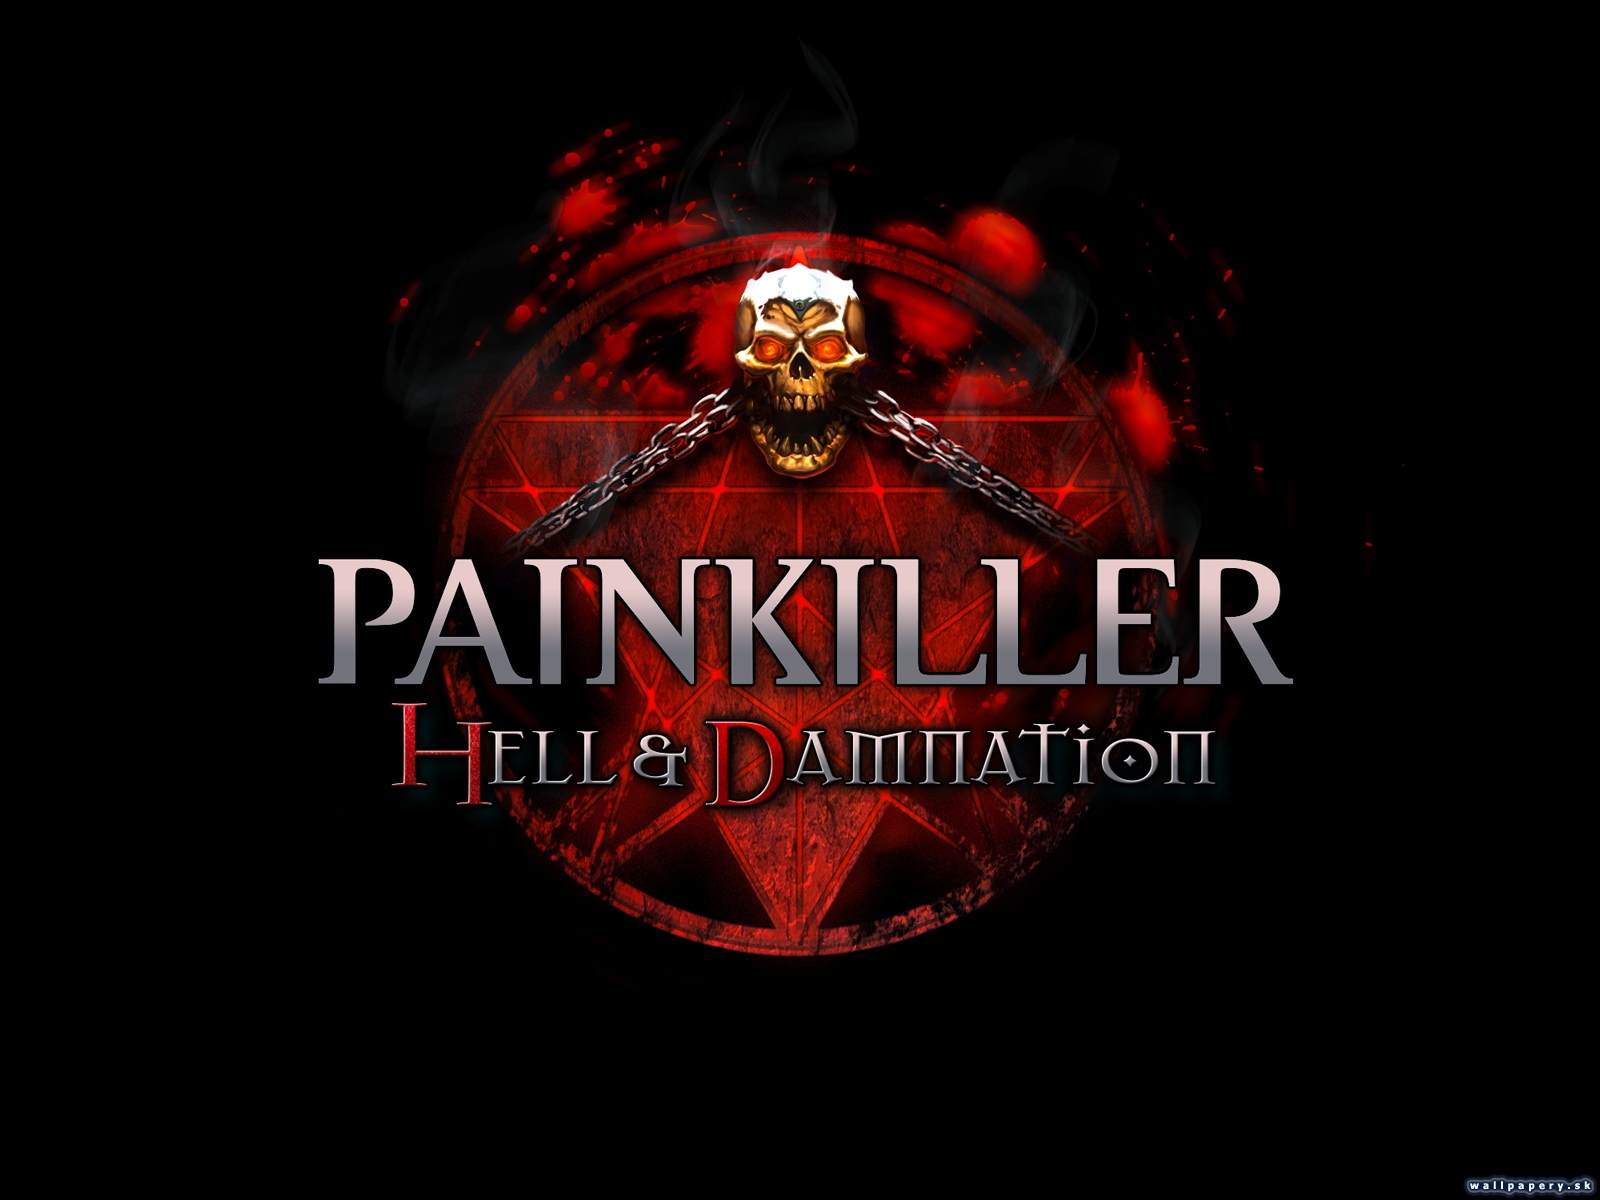 Painkiller Hell & Damnation - wallpaper 5